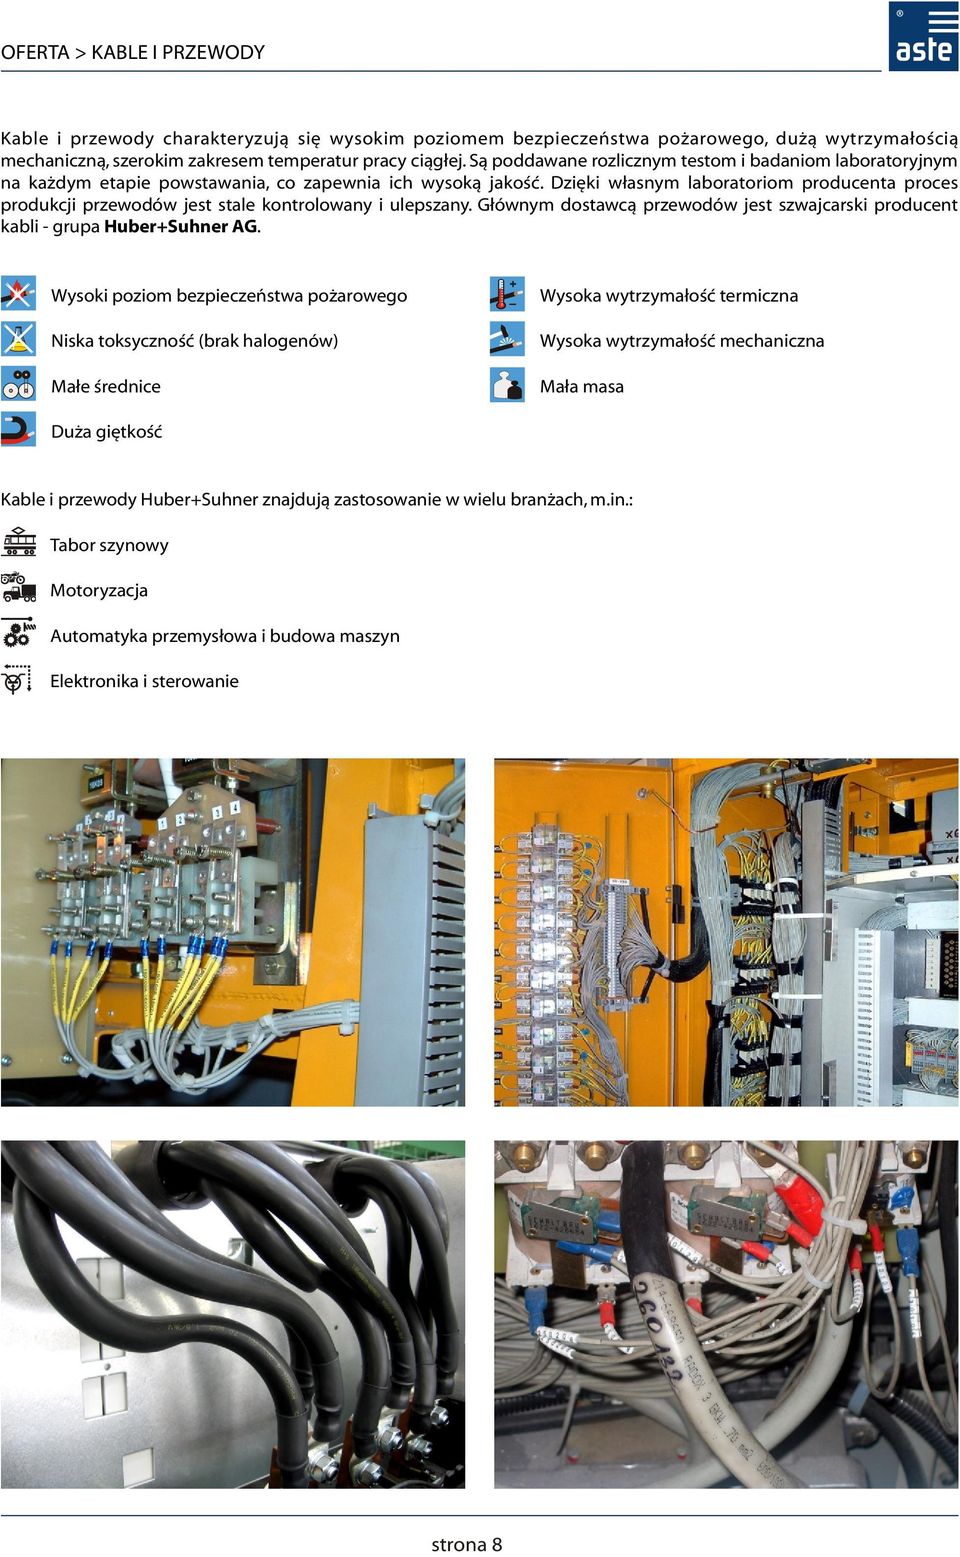 Dzięki własnym laboratoriom producenta proces produkcji przewodów jest stale kontrolowany i ulepszany. Głównym dostawcą przewodów jest szwajcarski producent kabli grupa Huber+Suhner AG.